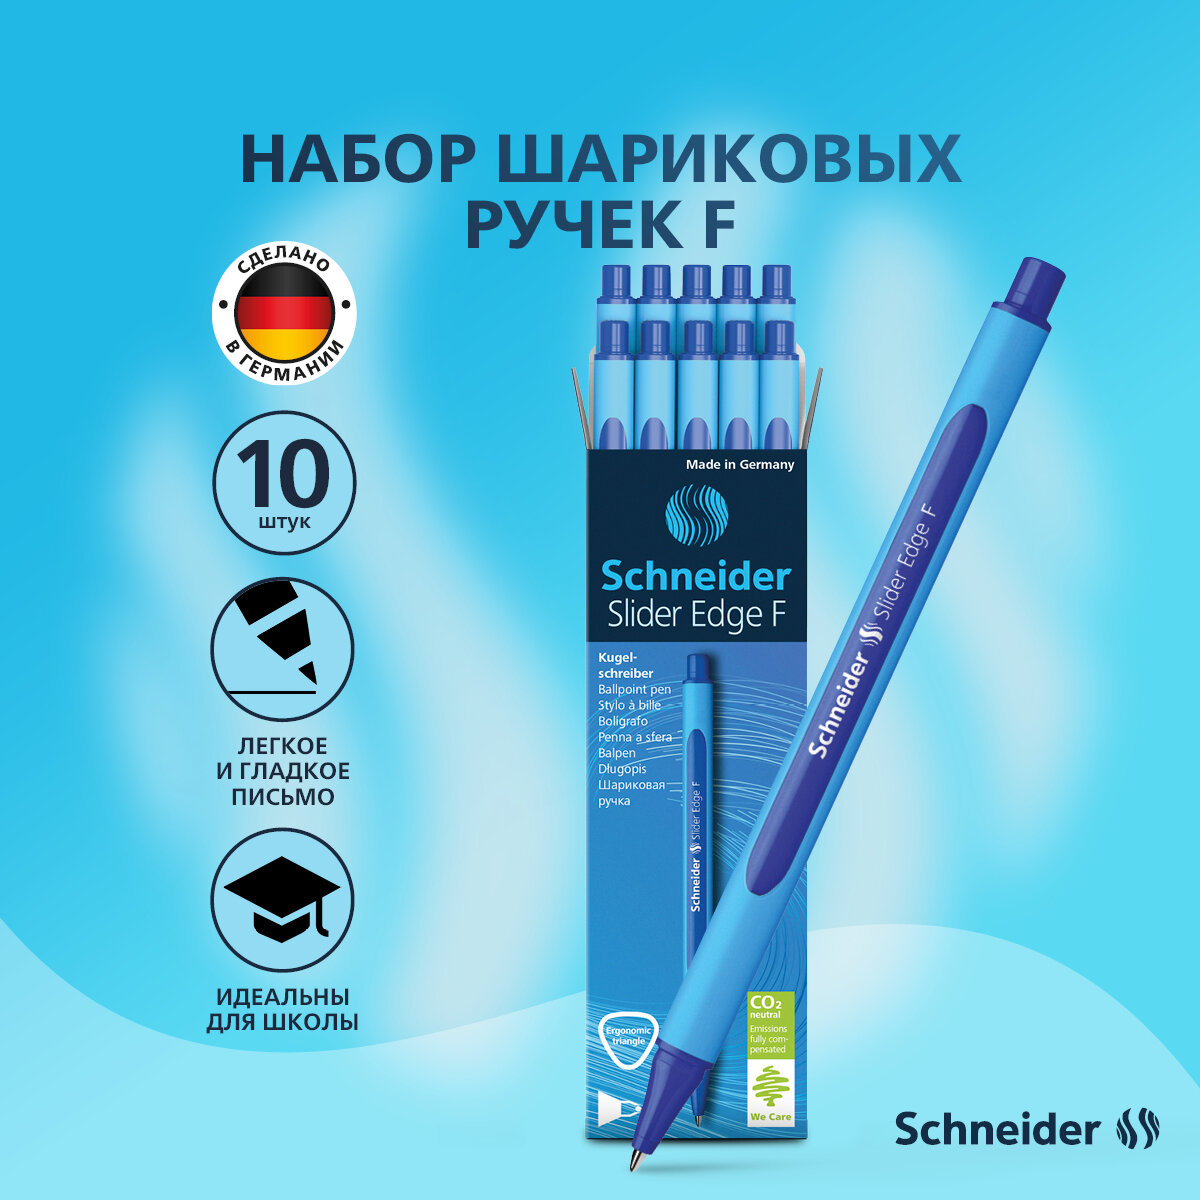 Ручка шариковая синяя Schneider " Slider Edge F ", линия письма 0,4 мм, трёхгранный прорезиненный корпус, набор 10 штук, канцелярия для офиса и школы